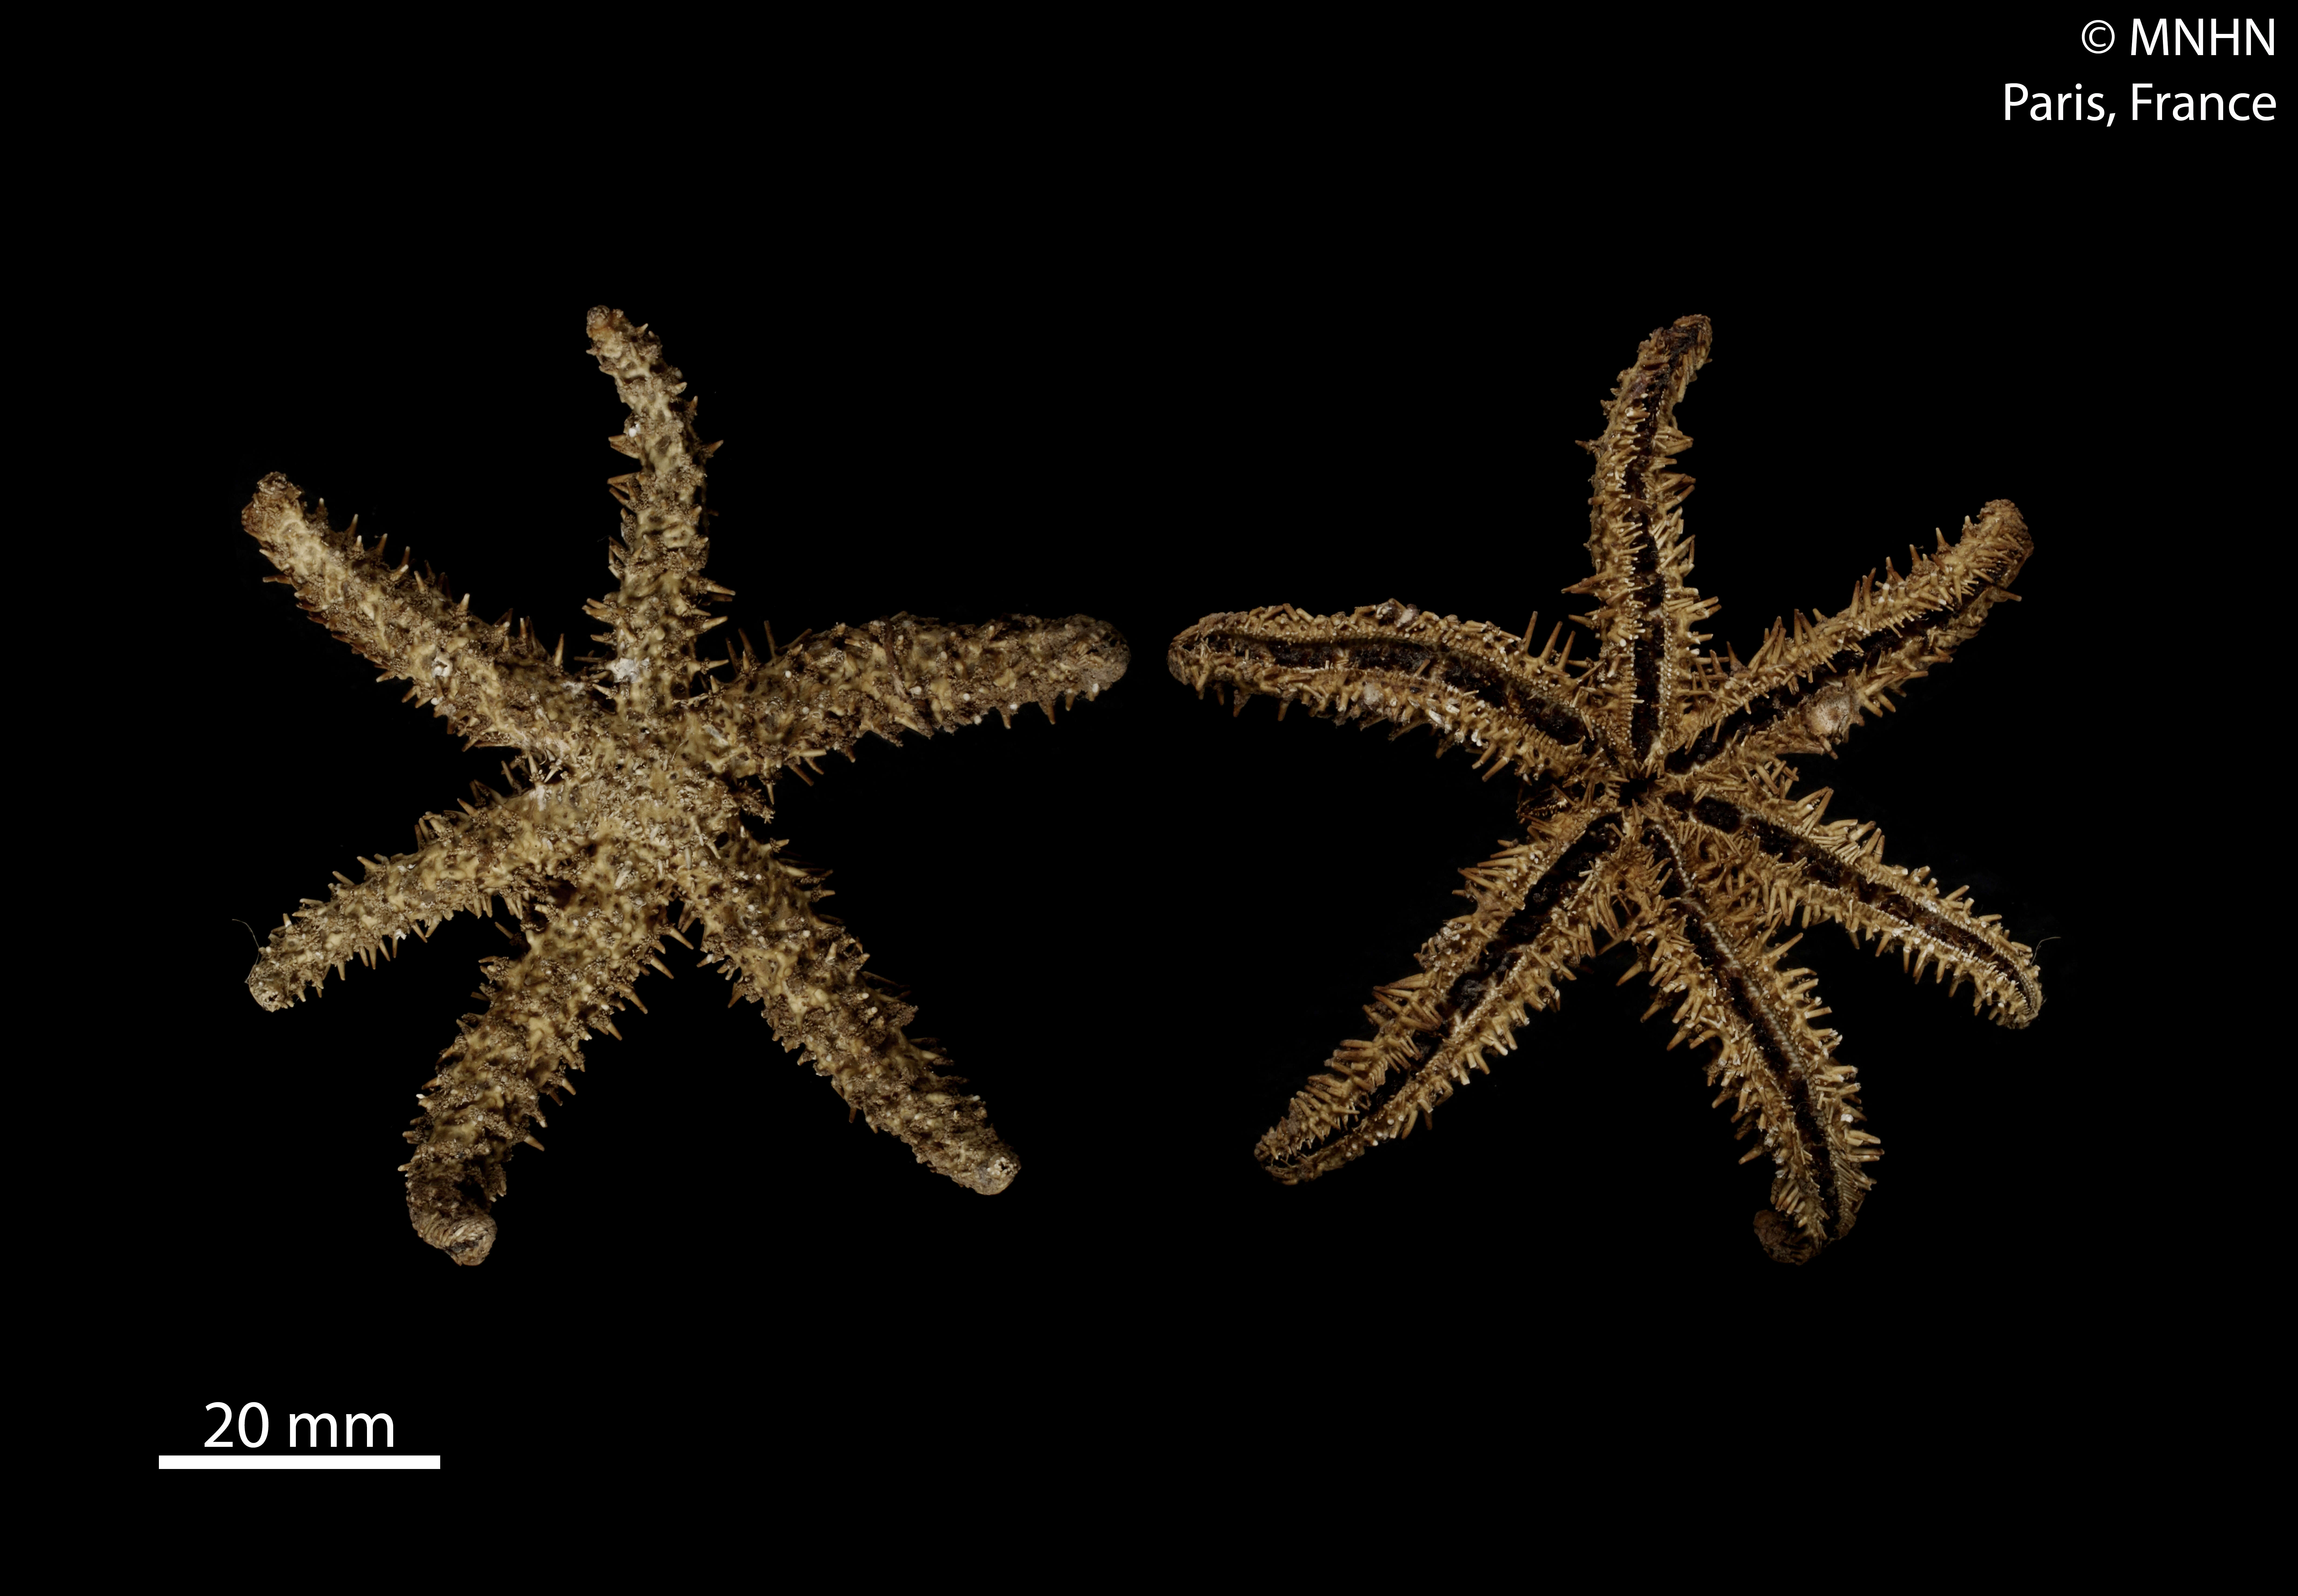 Image of white starfish